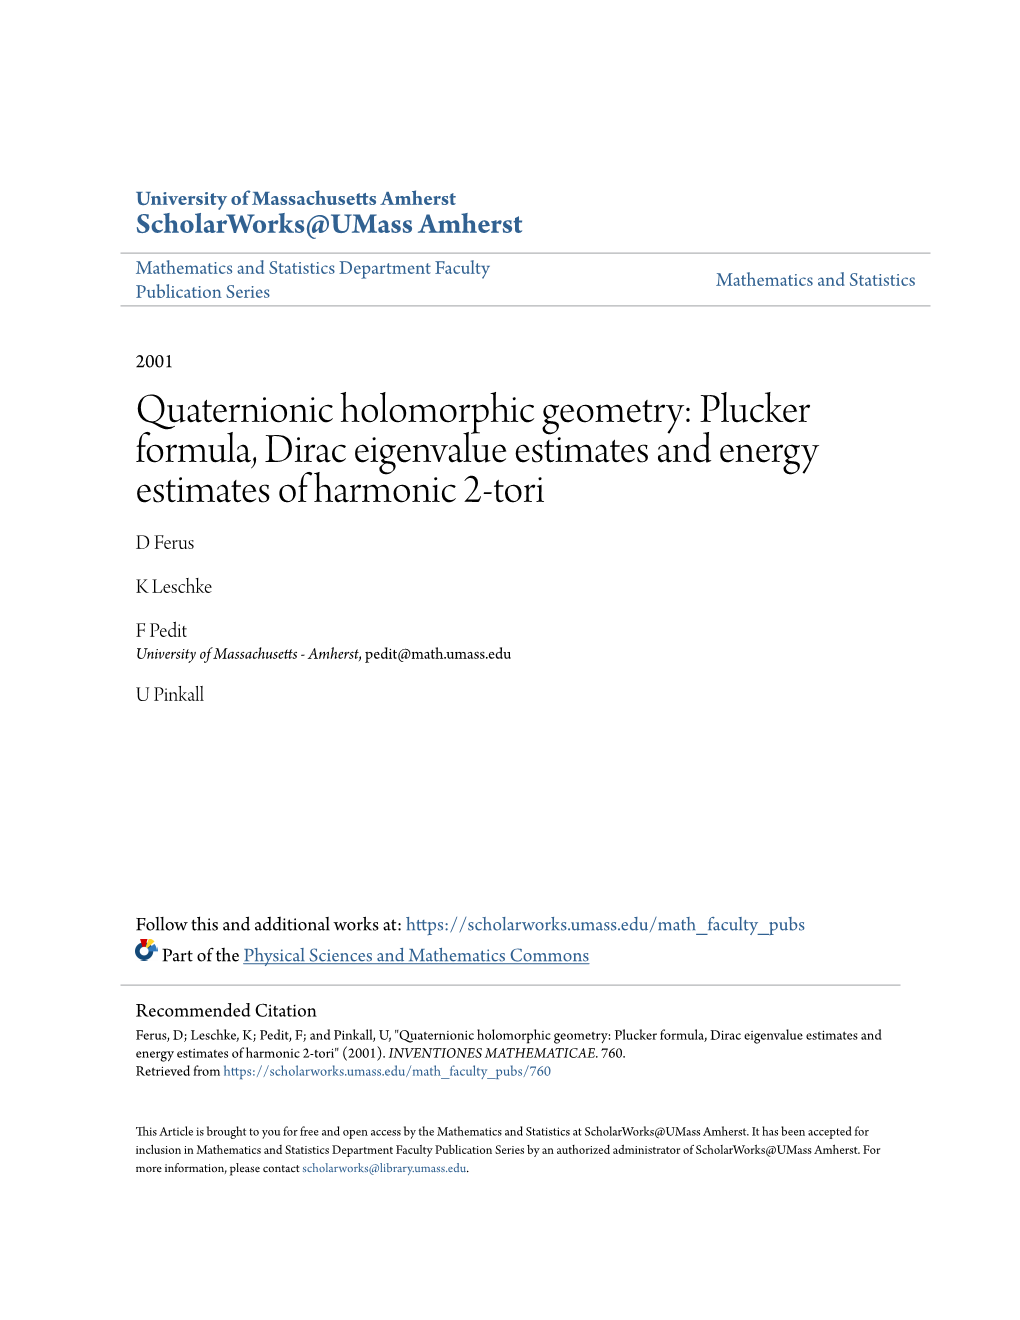 Quaternionic Holomorphic Geometry: Plucker Formula, Dirac Eigenvalue Estimates and Energy Estimates of Harmonic 2-Tori D Ferus